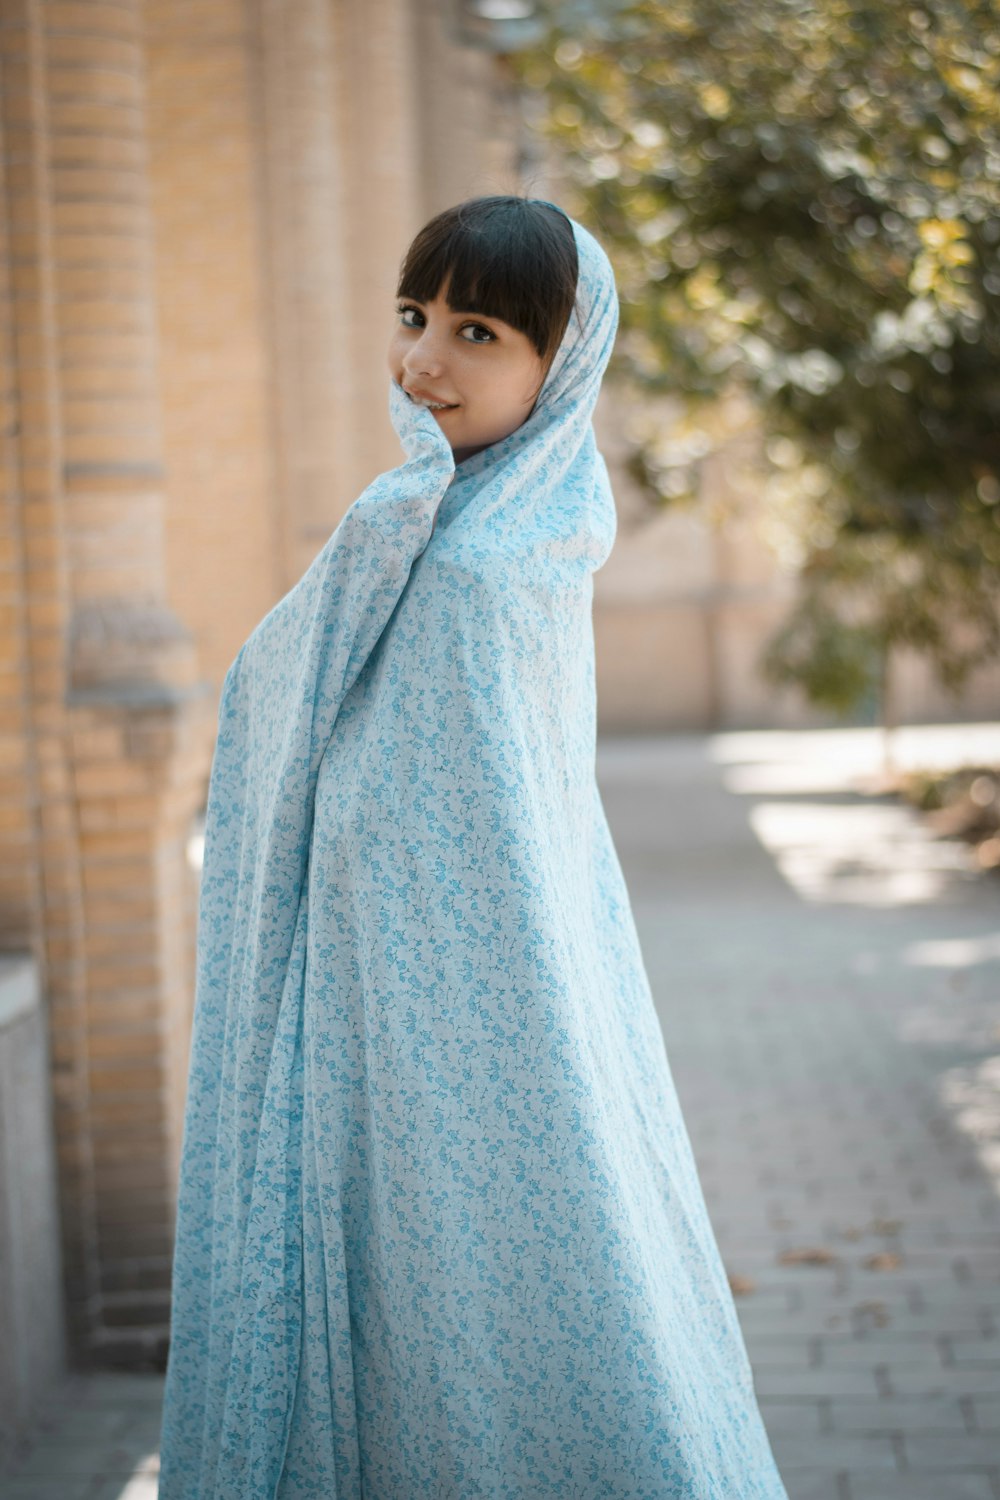 昼間、歩道に立つ青いヒジャーブの少女